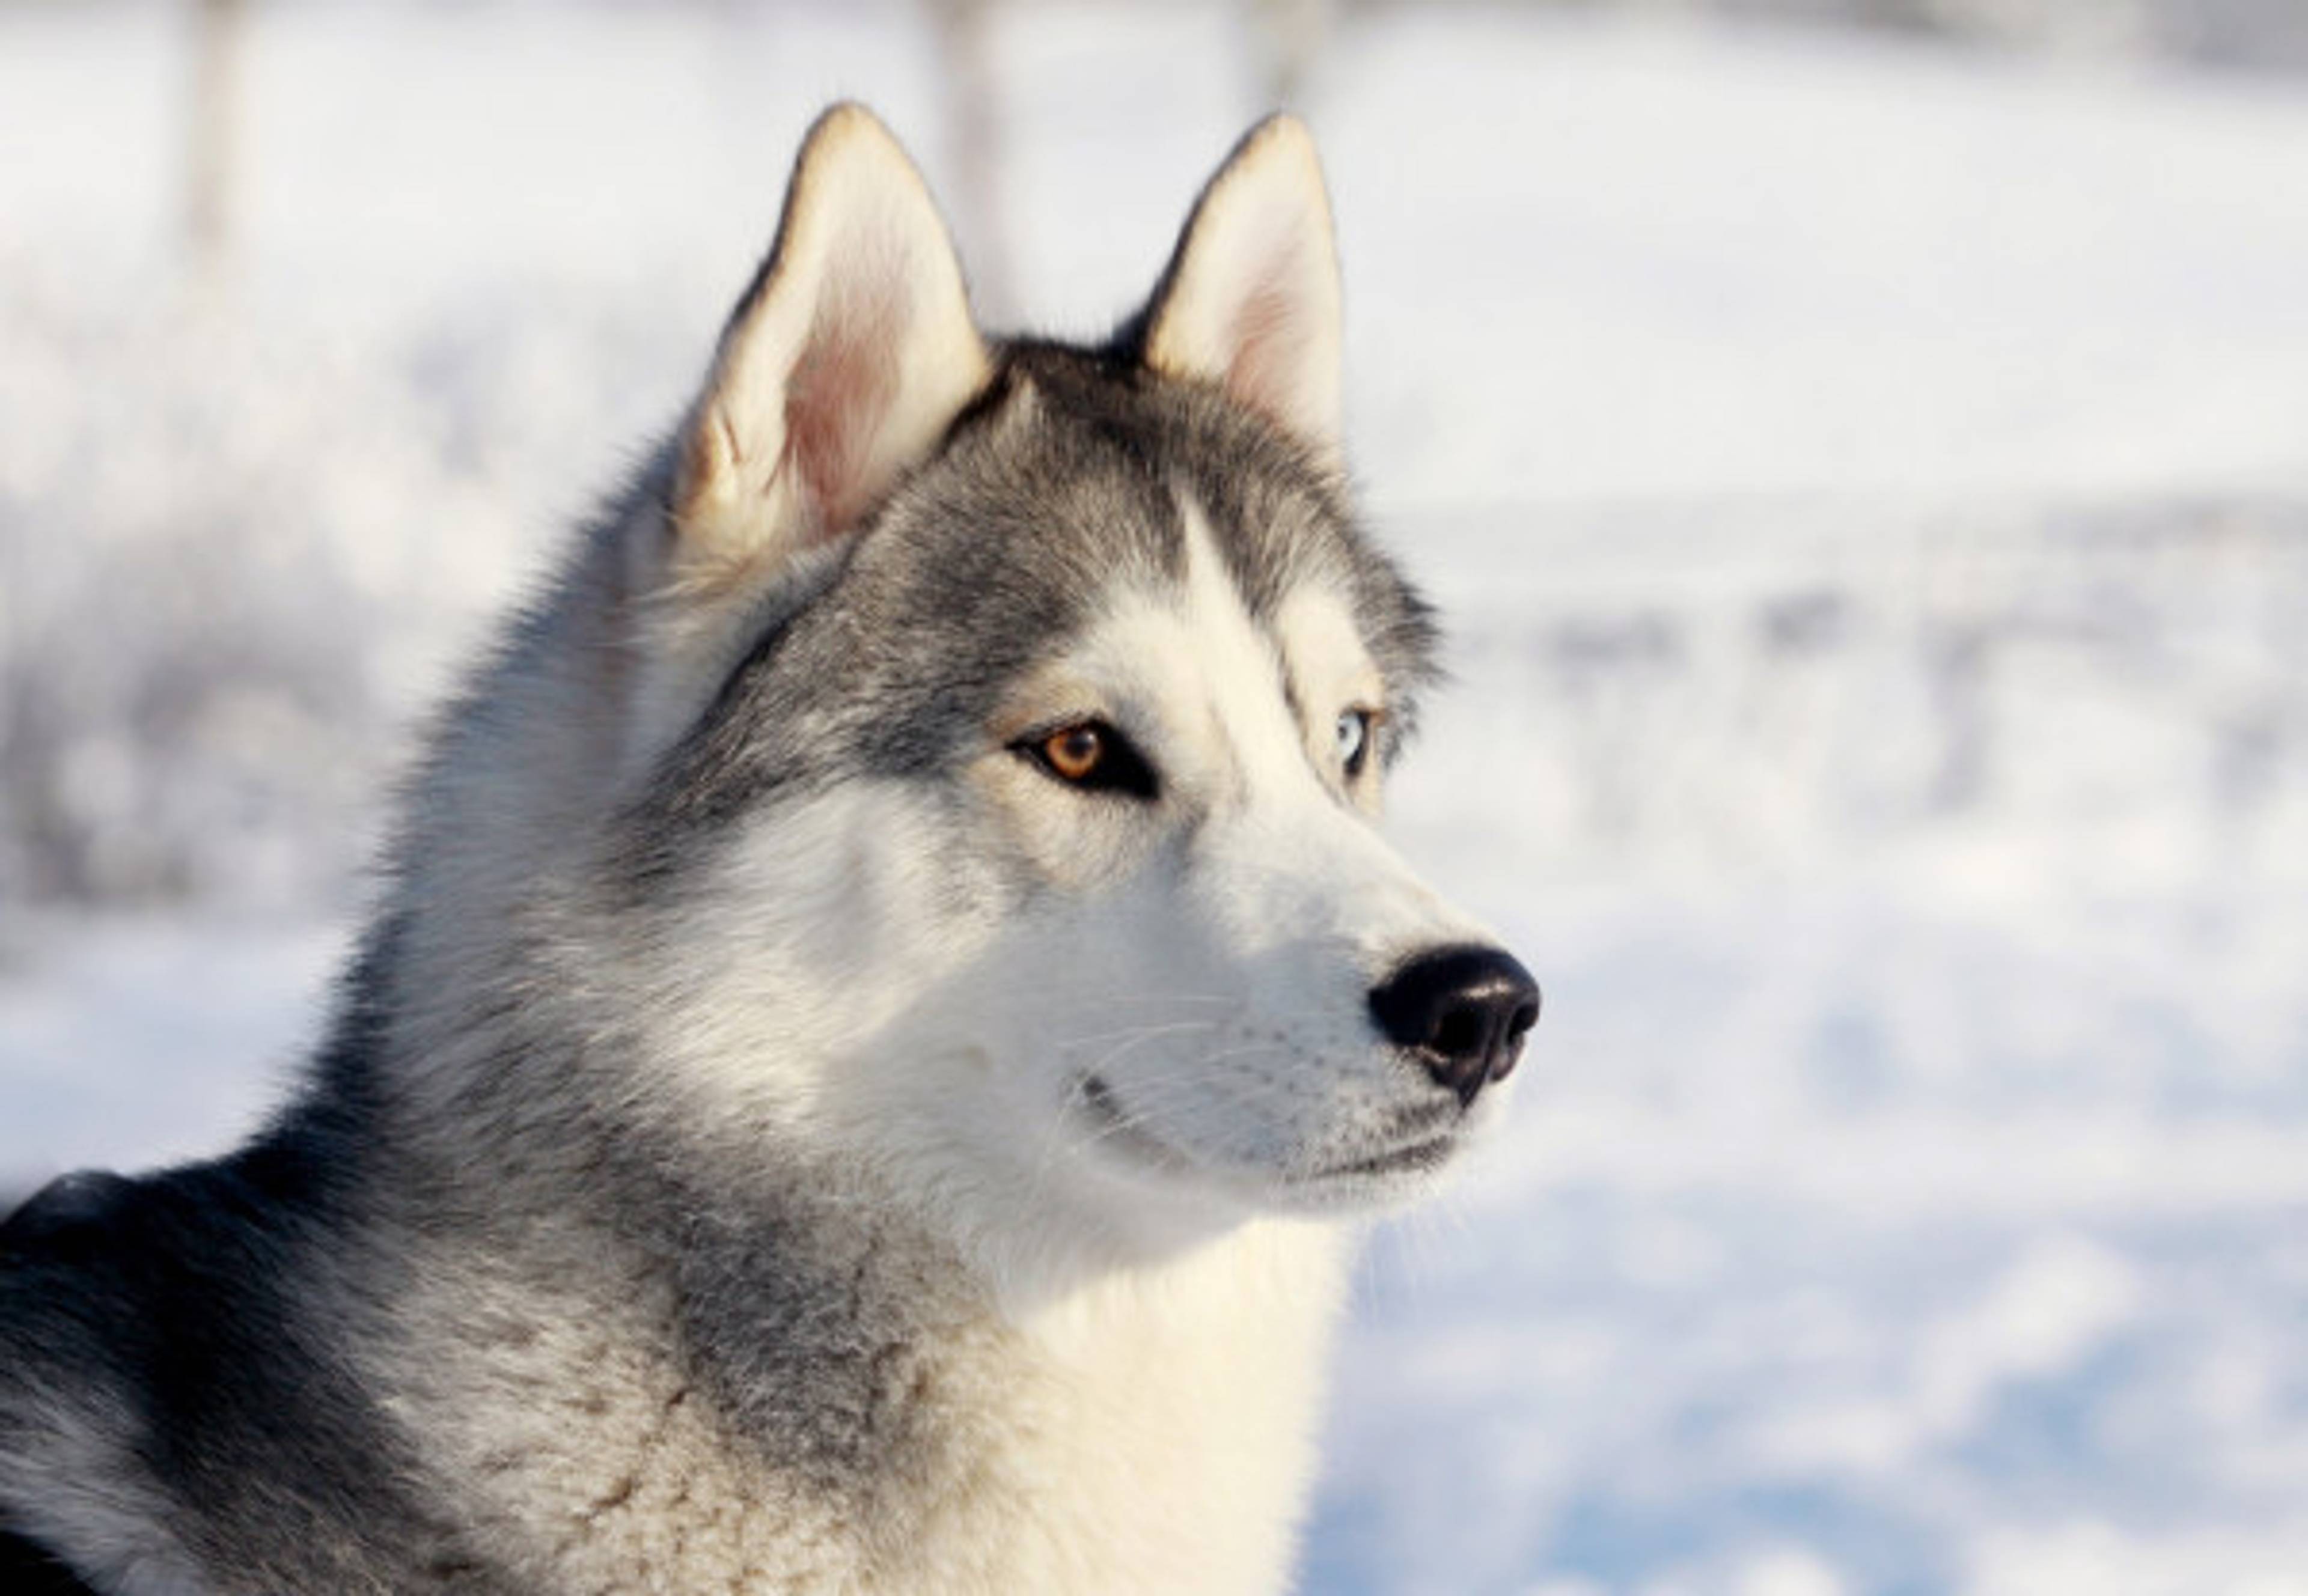 Turklub, Northern Sleddog Kennel, Huskies of Siberia